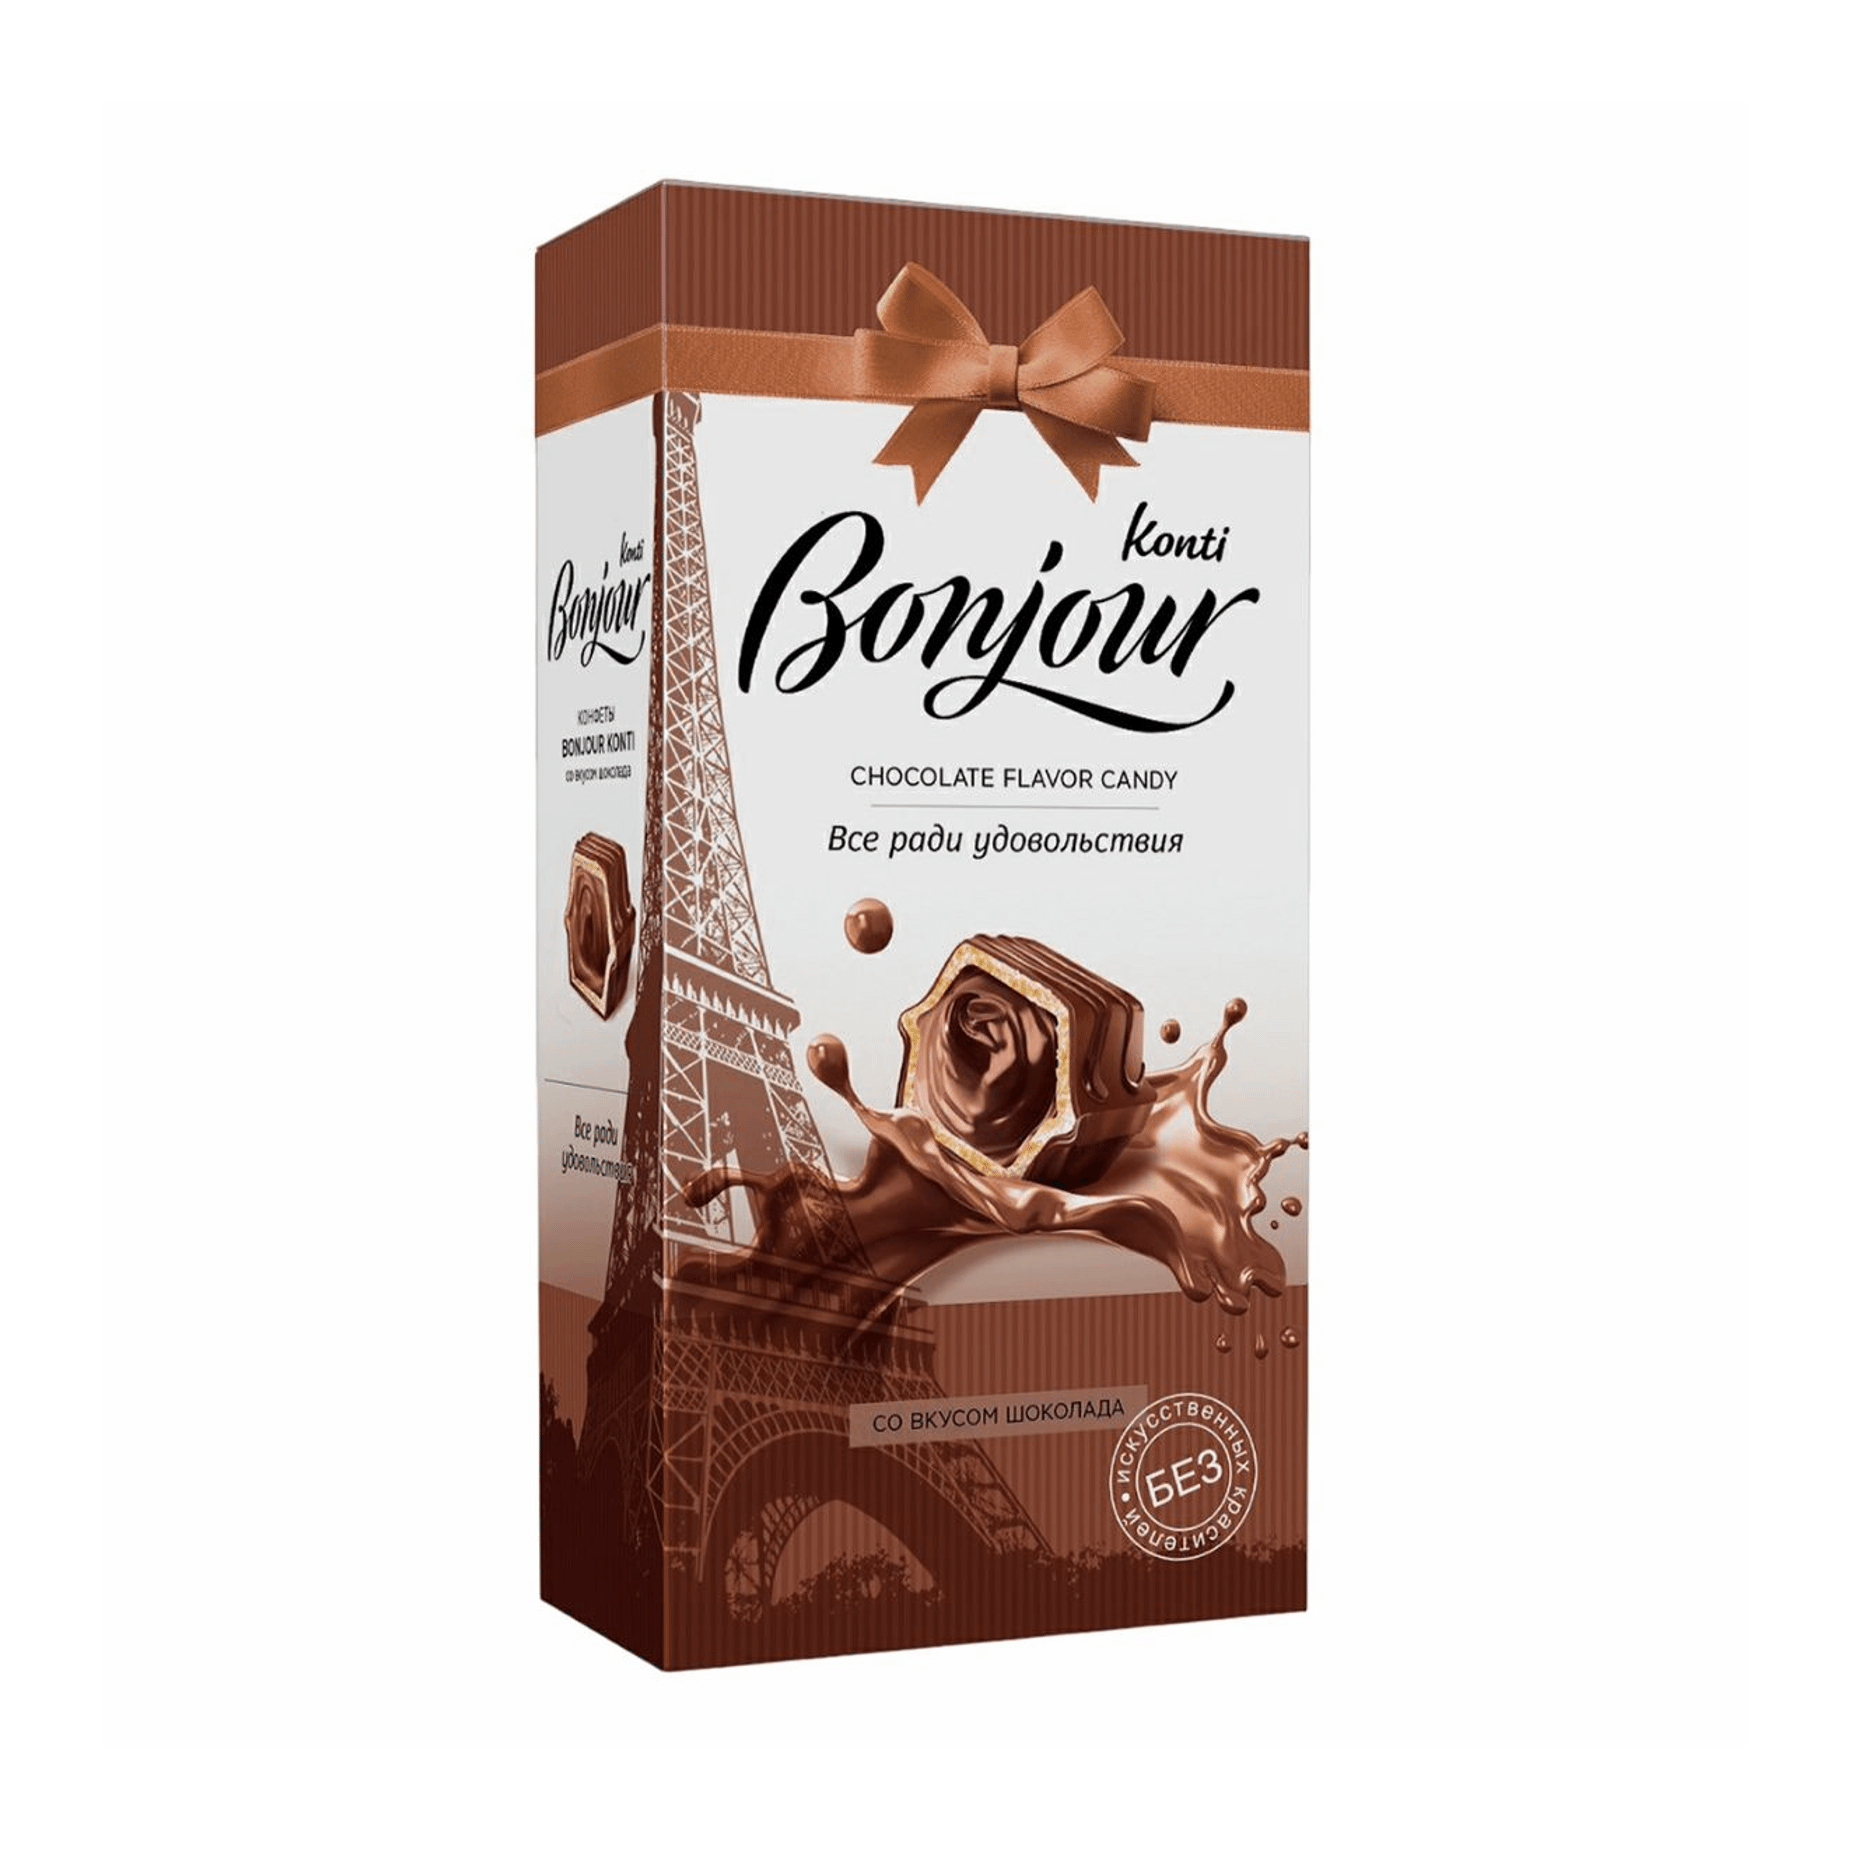 конфеты шоколадные konti золотая лилия вес Конфеты шоколадные Konti Bonjour со вкусом шоколада 80 г